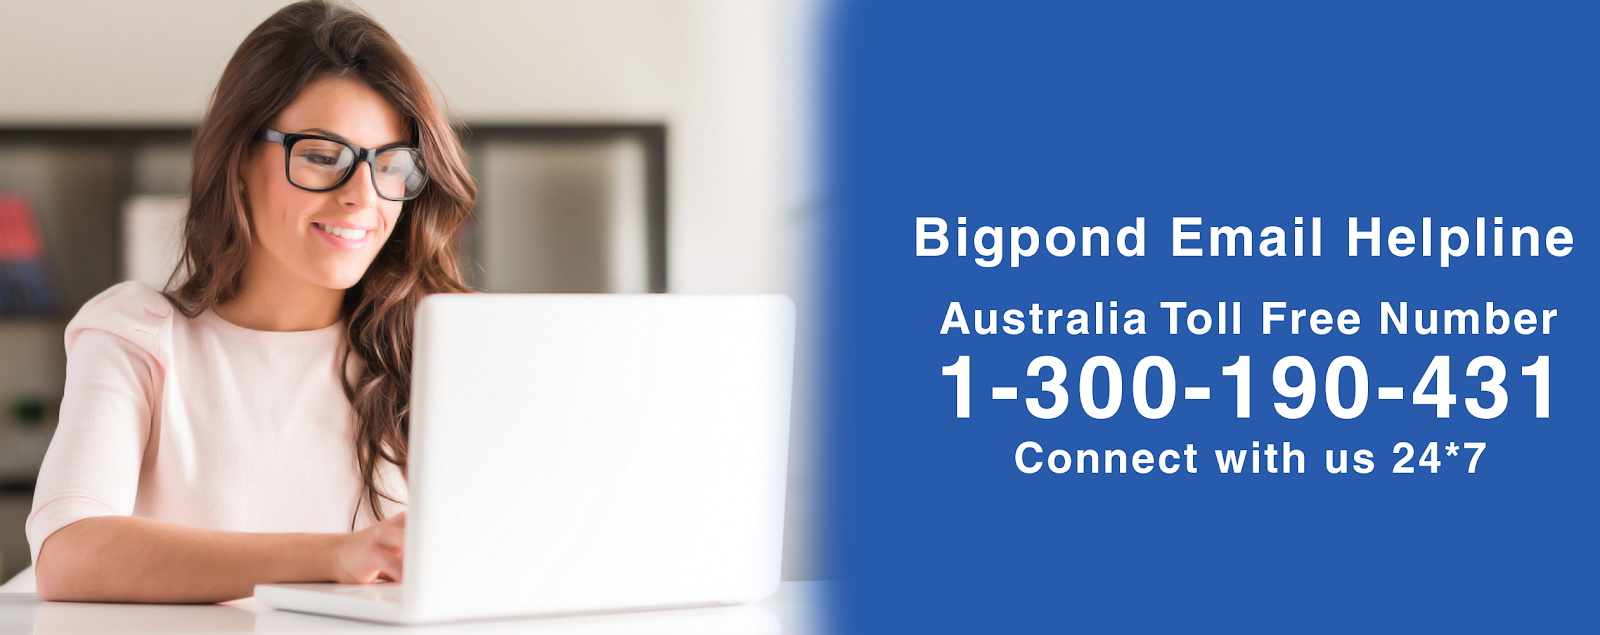 Bigpond Email Helpline Number 1-300-190-431 Bigpond Support Number Australia